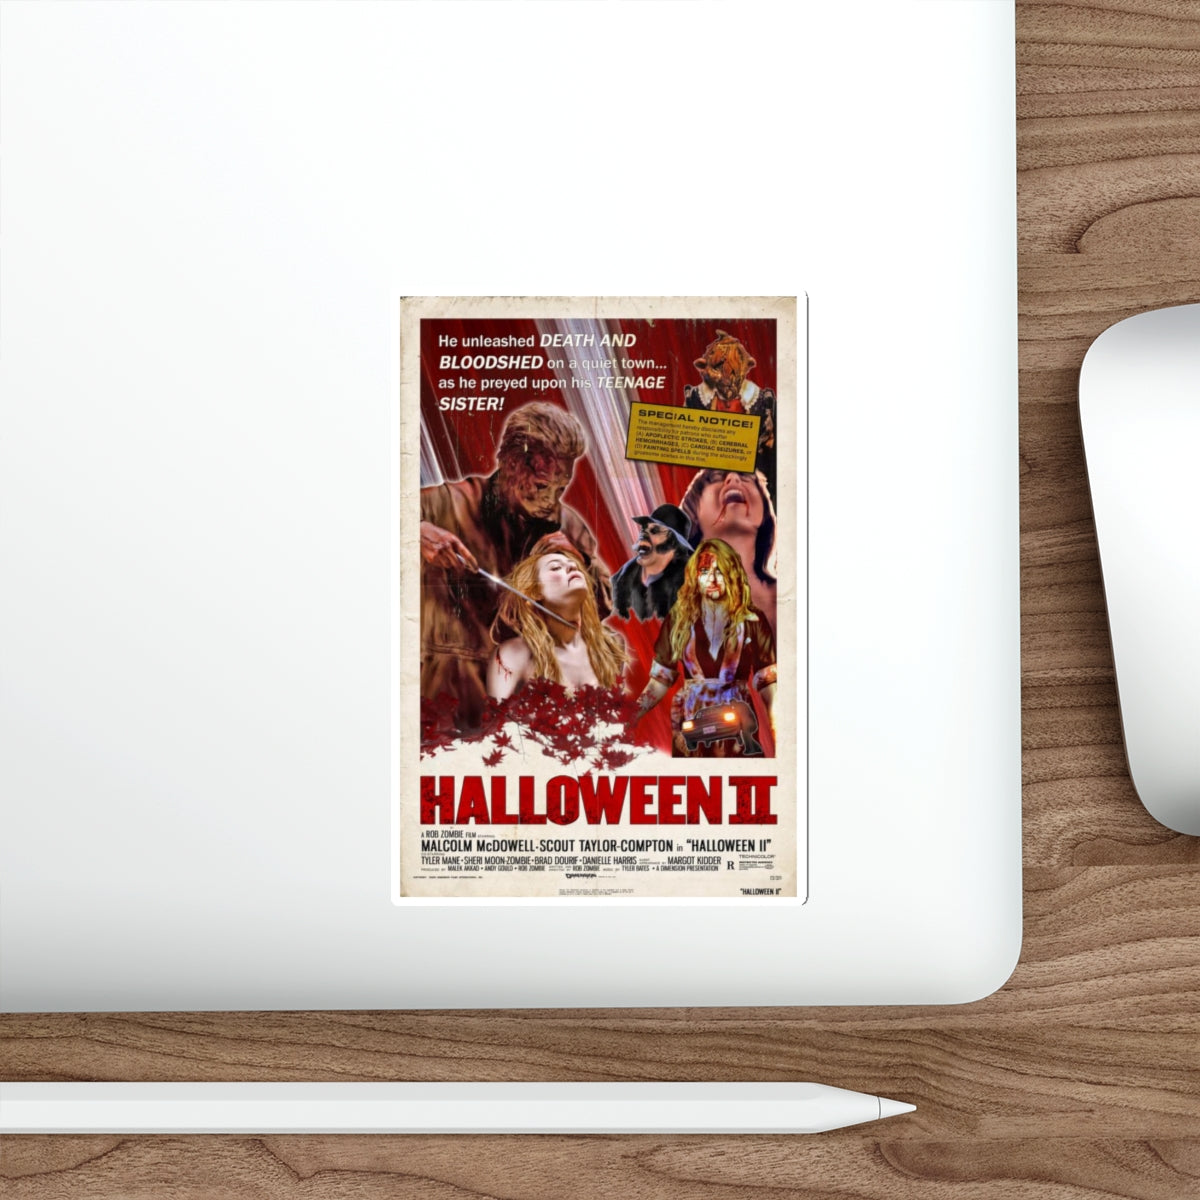 HALLOWEEN II (REMAKE RETROPOSTER) 1981 Movie Poster STICKER Vinyl Die-Cut Decal-The Sticker Space